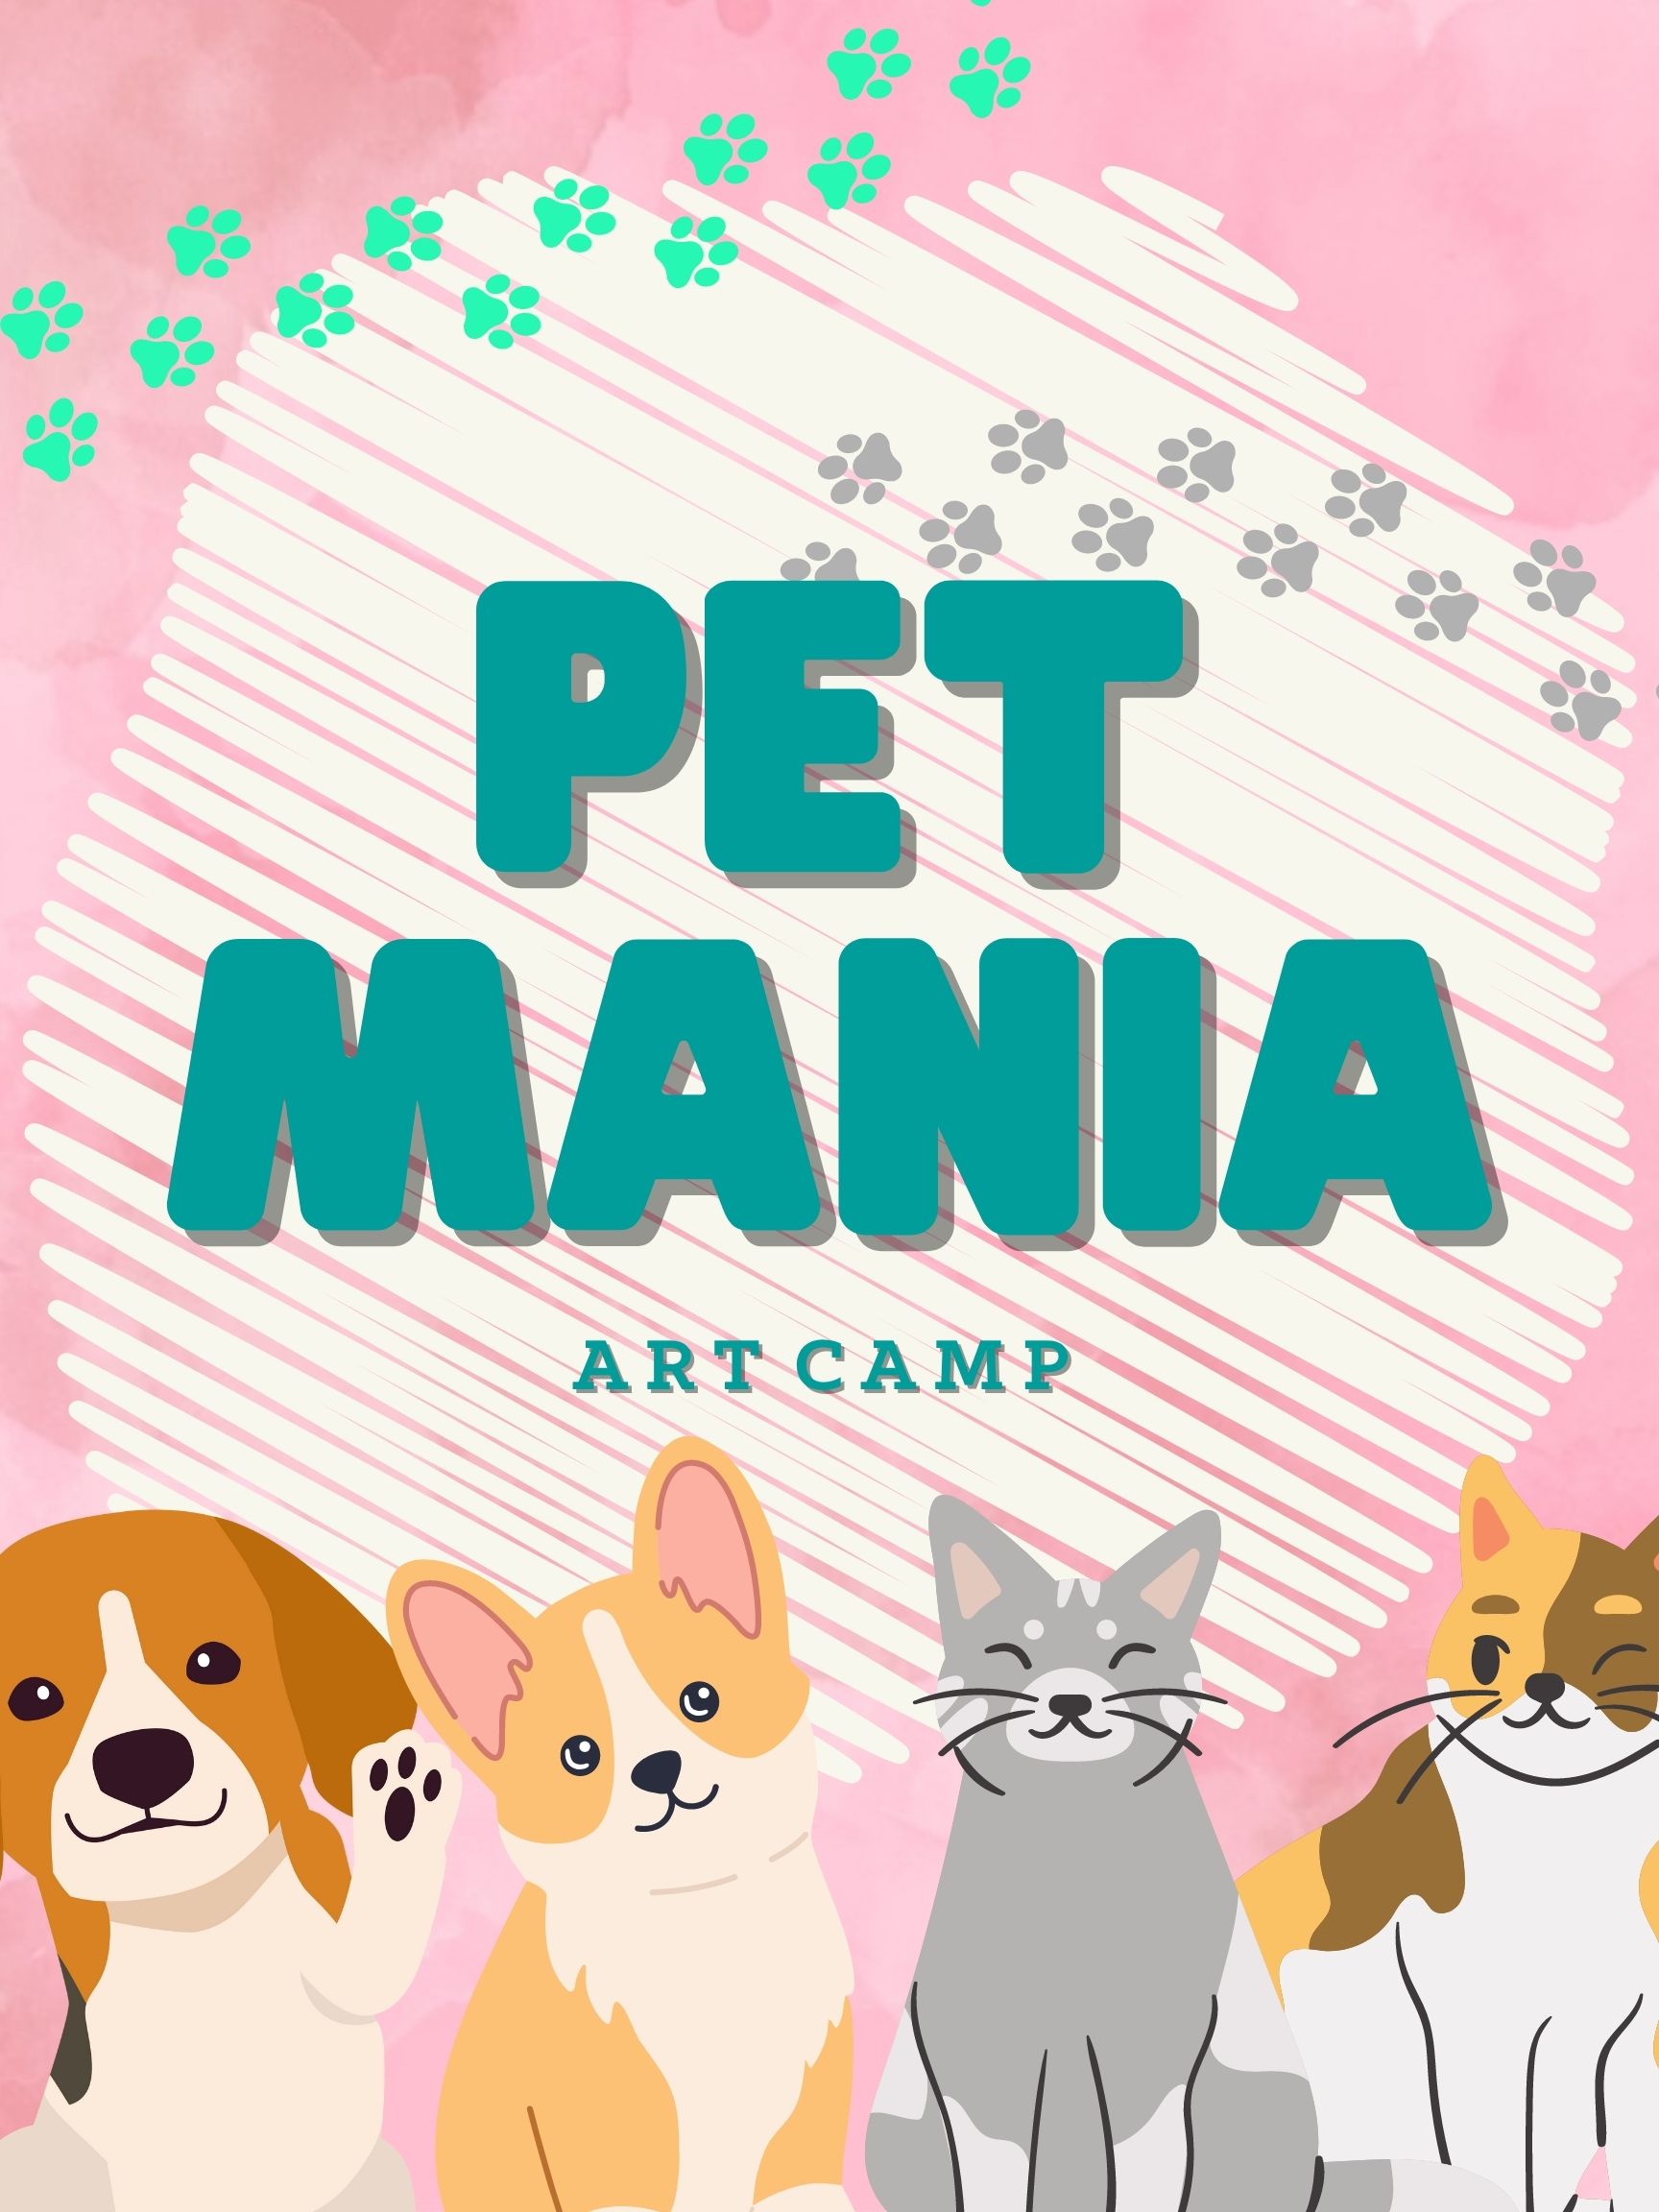 Pet Mania Art Camp!